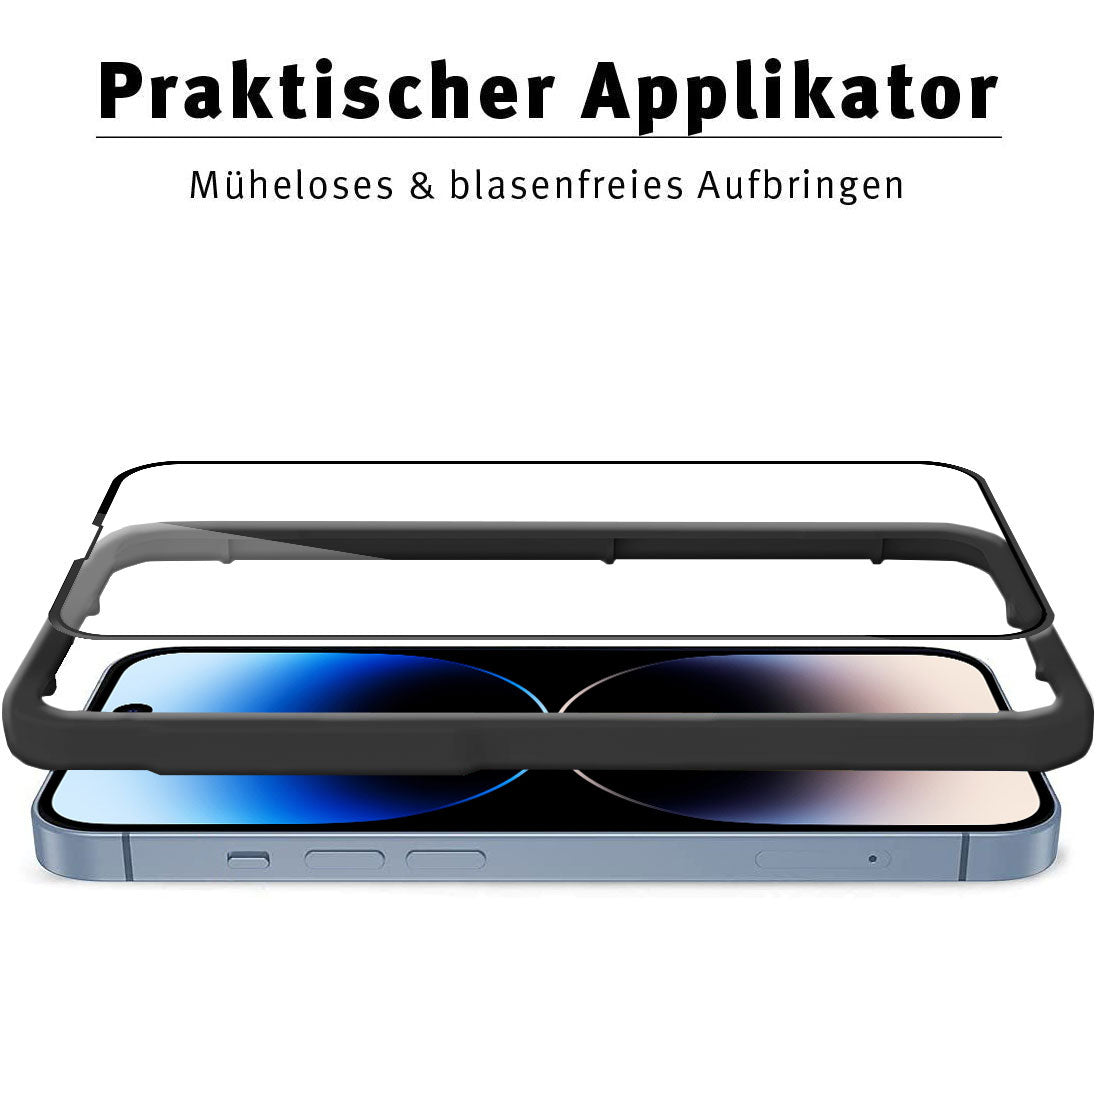 ArktisPRO iPhone 14 Pro Max FULL COVER Displayschutz GLAS - hüllenfreundlich - 3er Set